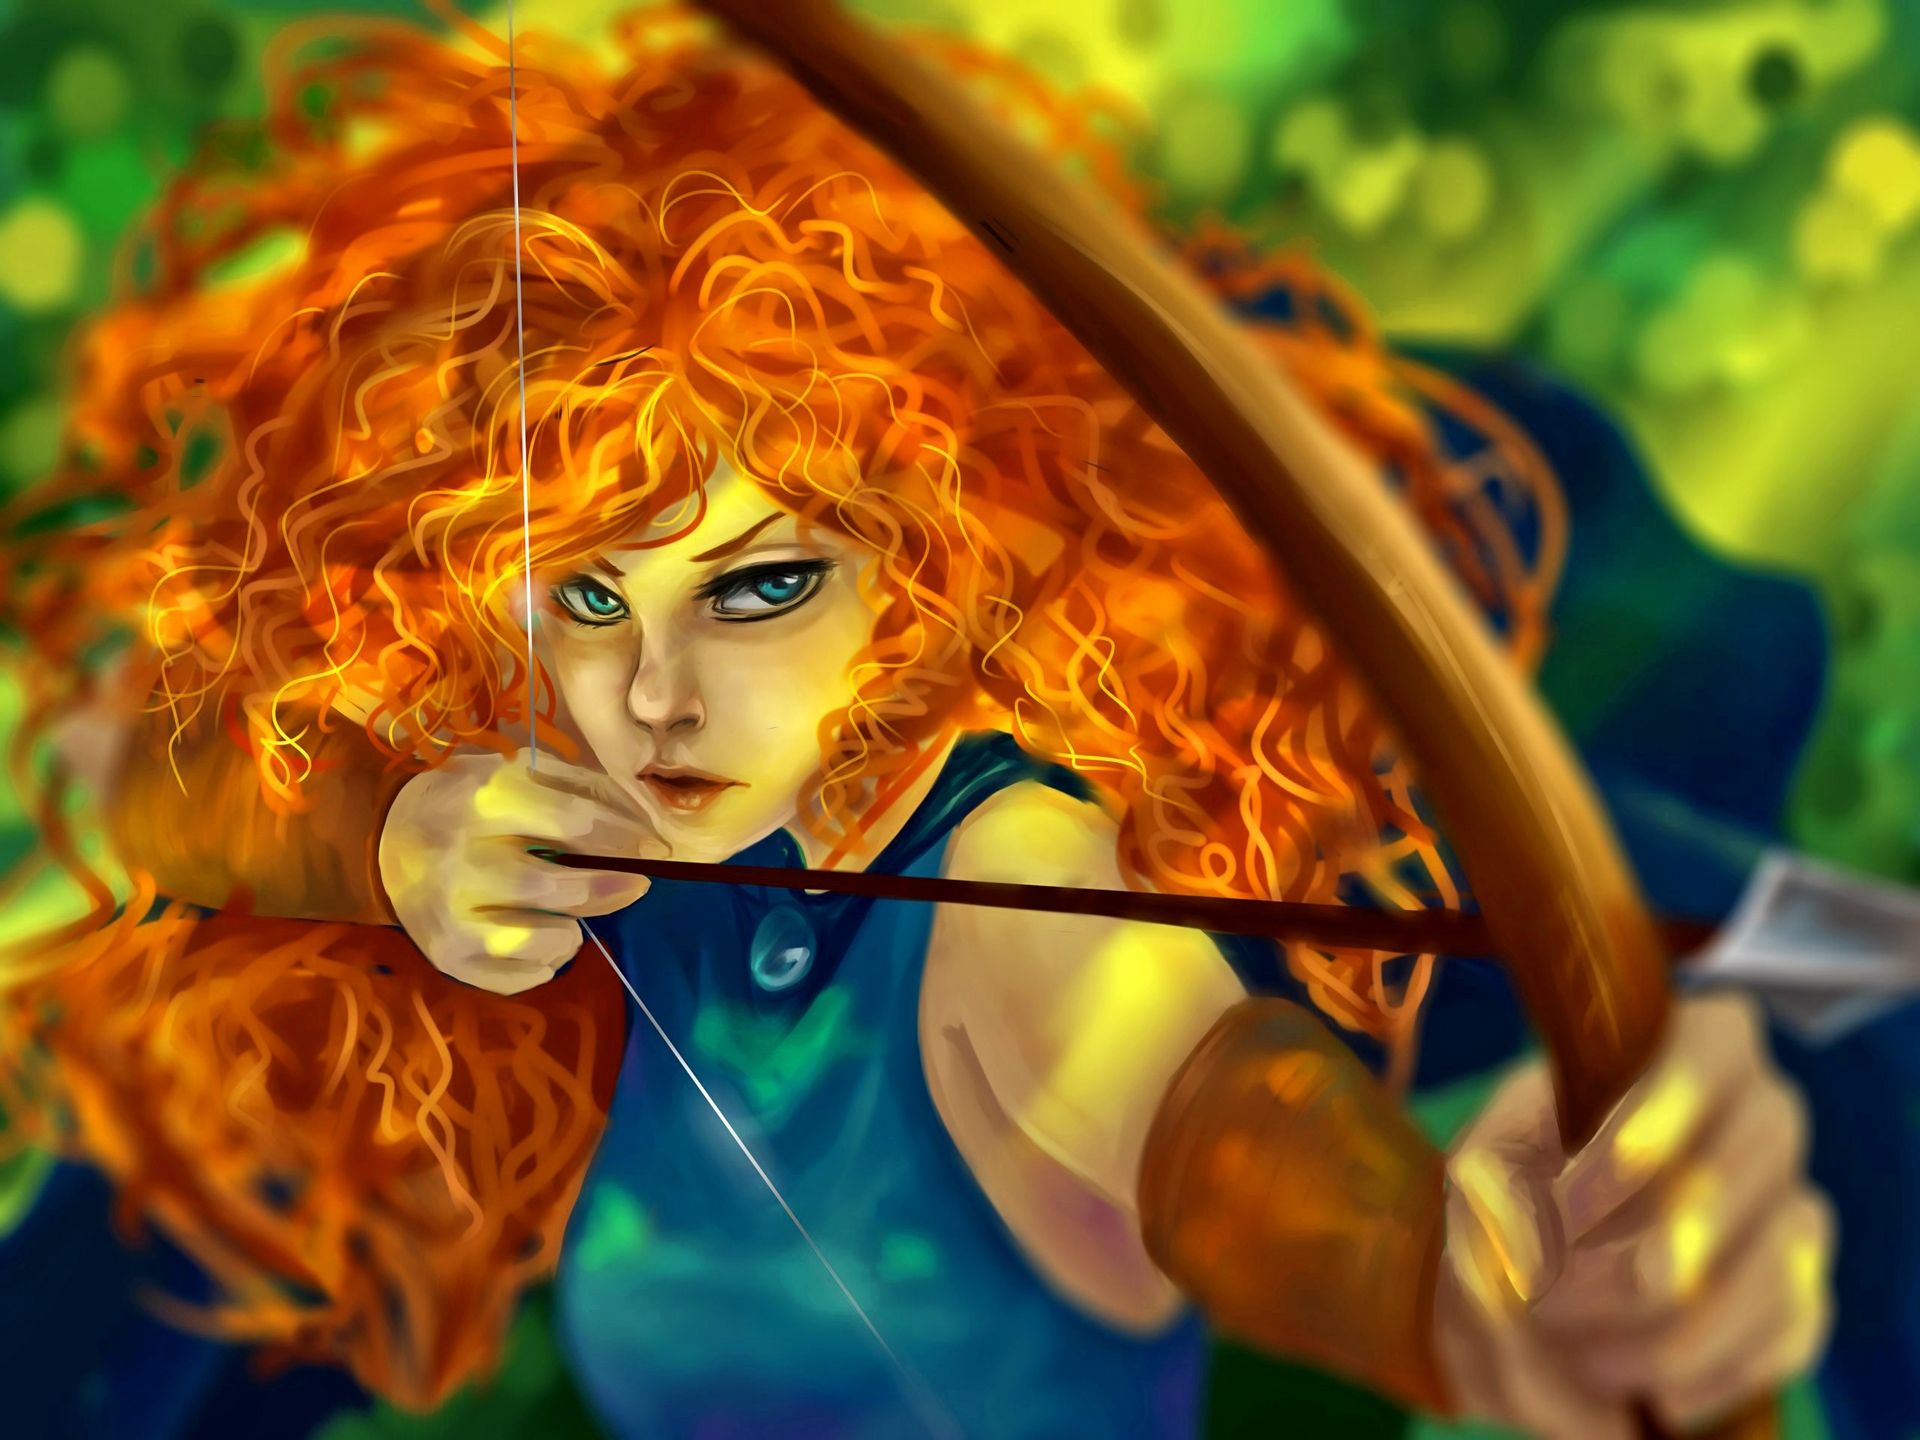 magic, archer, animation, celtic, Arrow, redhead, movie, bow, girl